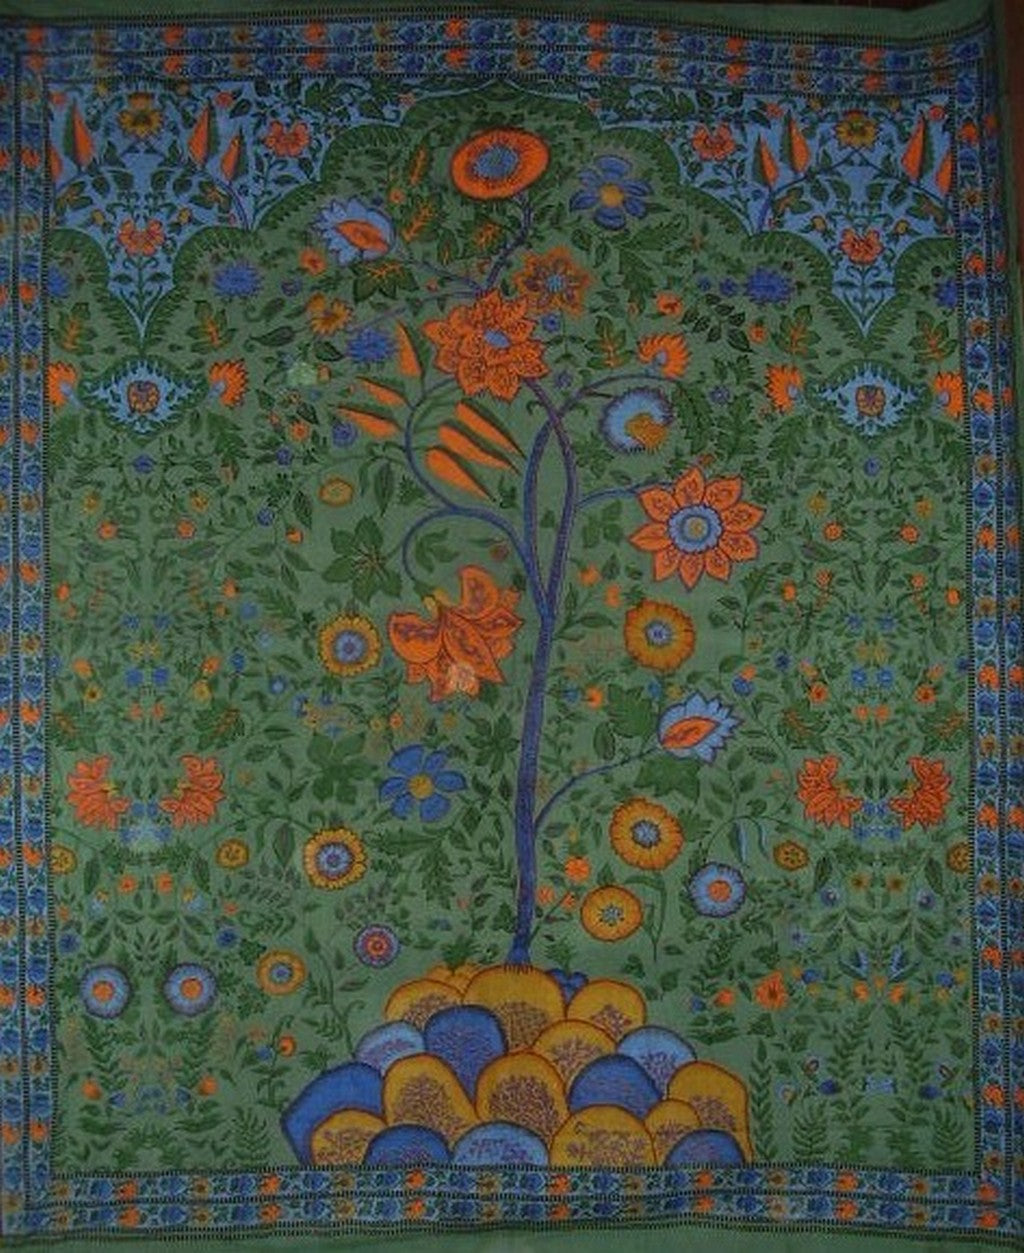 Bawełniana narzuta na łóżko Drzewo życia 108 x 88 cali, pełna królowej zieleni